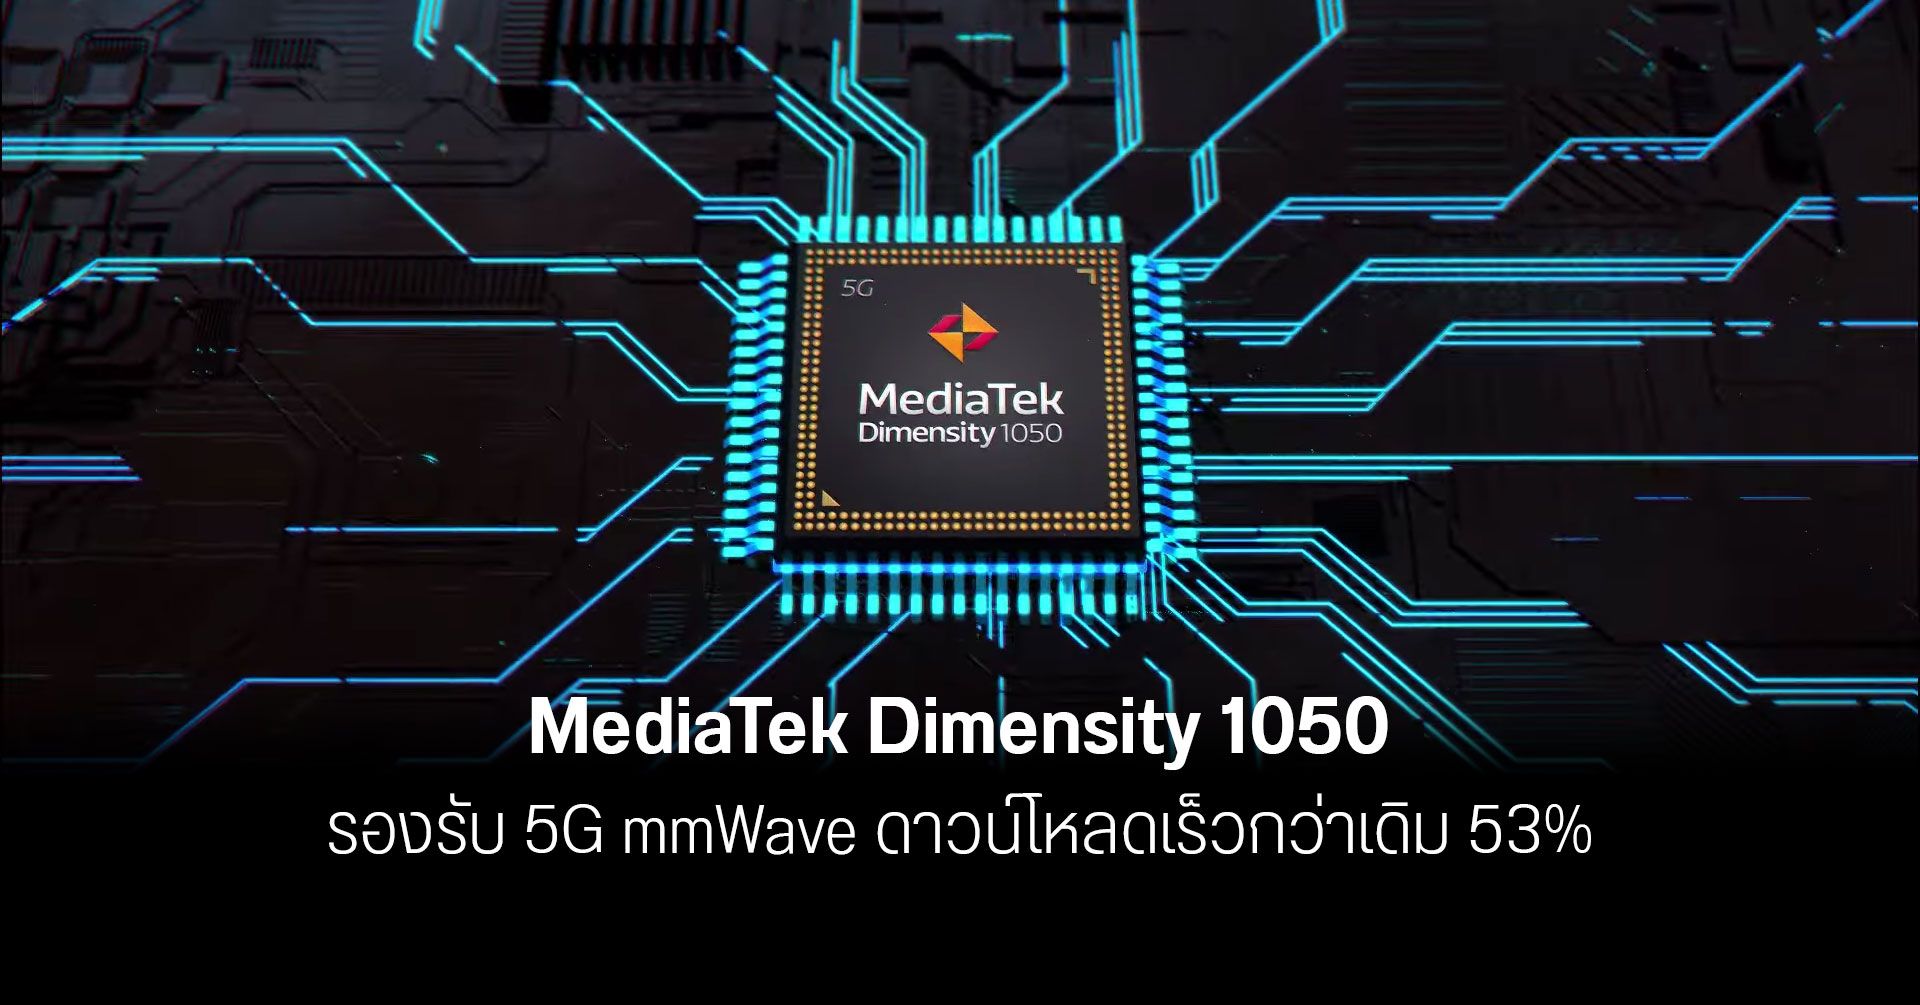 เปิดตัว Dimensity 1050 ชิปตัวแรกของ MediaTek ที่รองรับ 5G ทั้ง mmWave และ sub-6 GHz